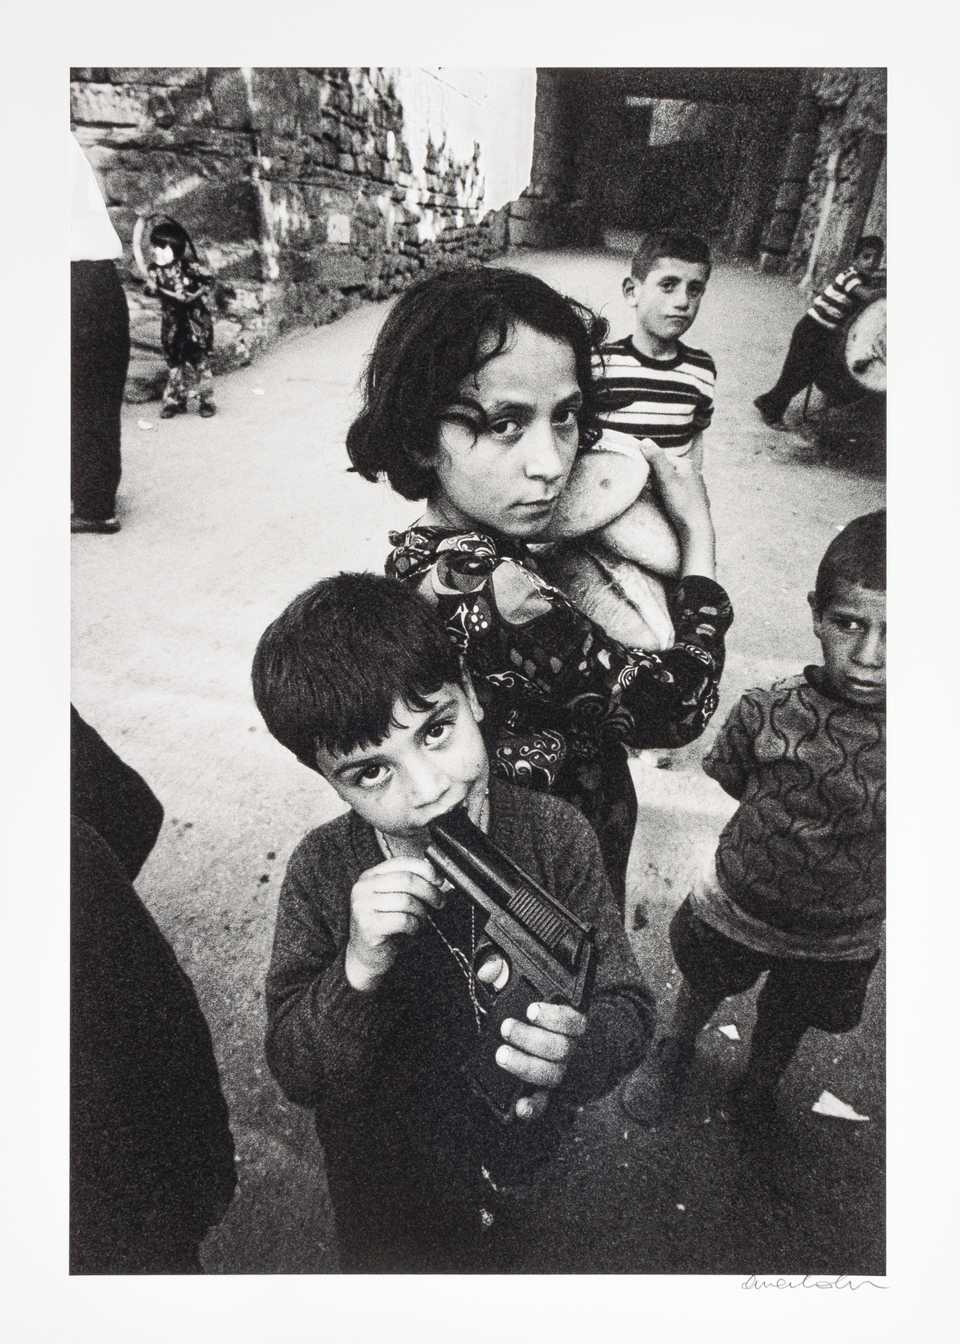 “Ankara Kaleici, bread and gun” was shot in 1970.